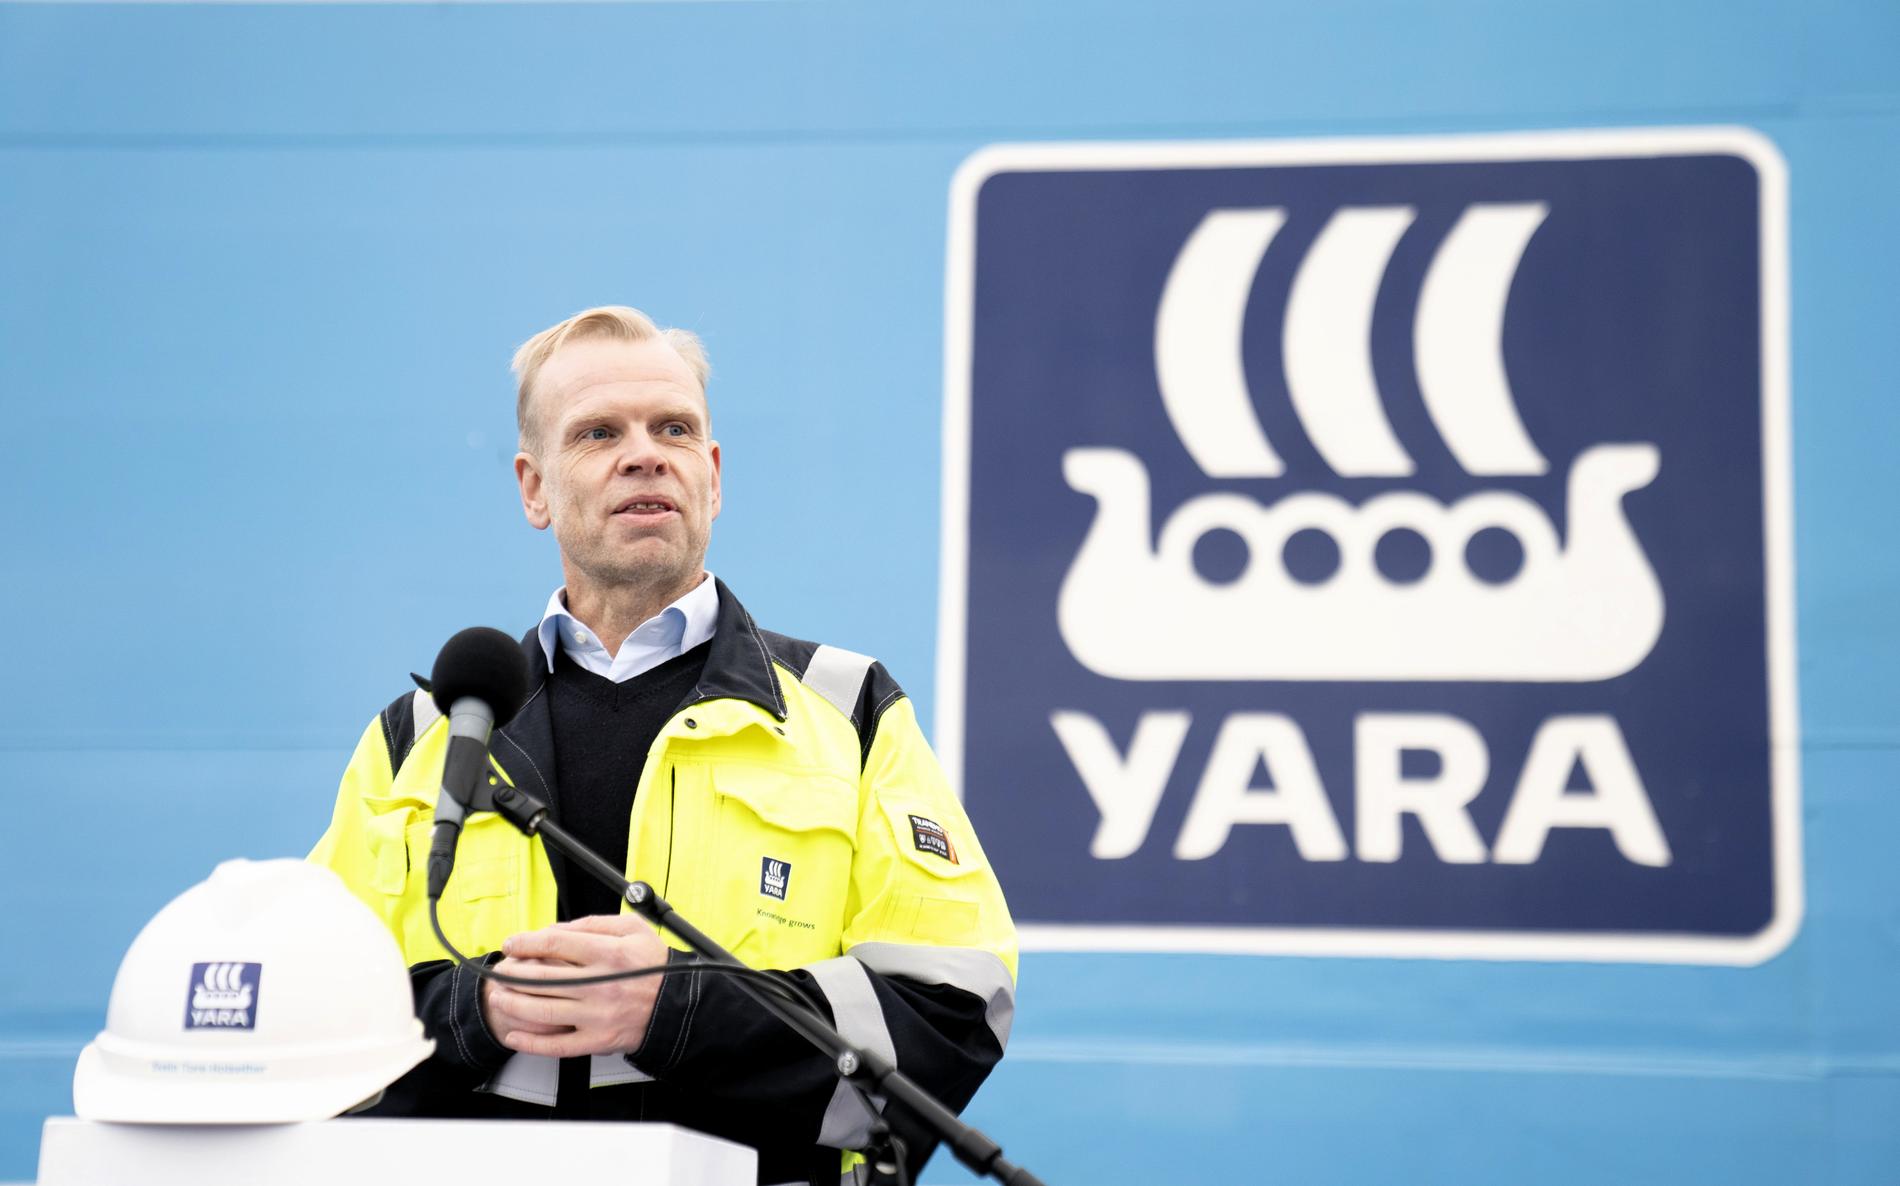 TALLSLIPP: Yara-sjef Svein Tore Holsether legger frem resultater for første kvartal. Her avbildet ved en tidligere anledning.